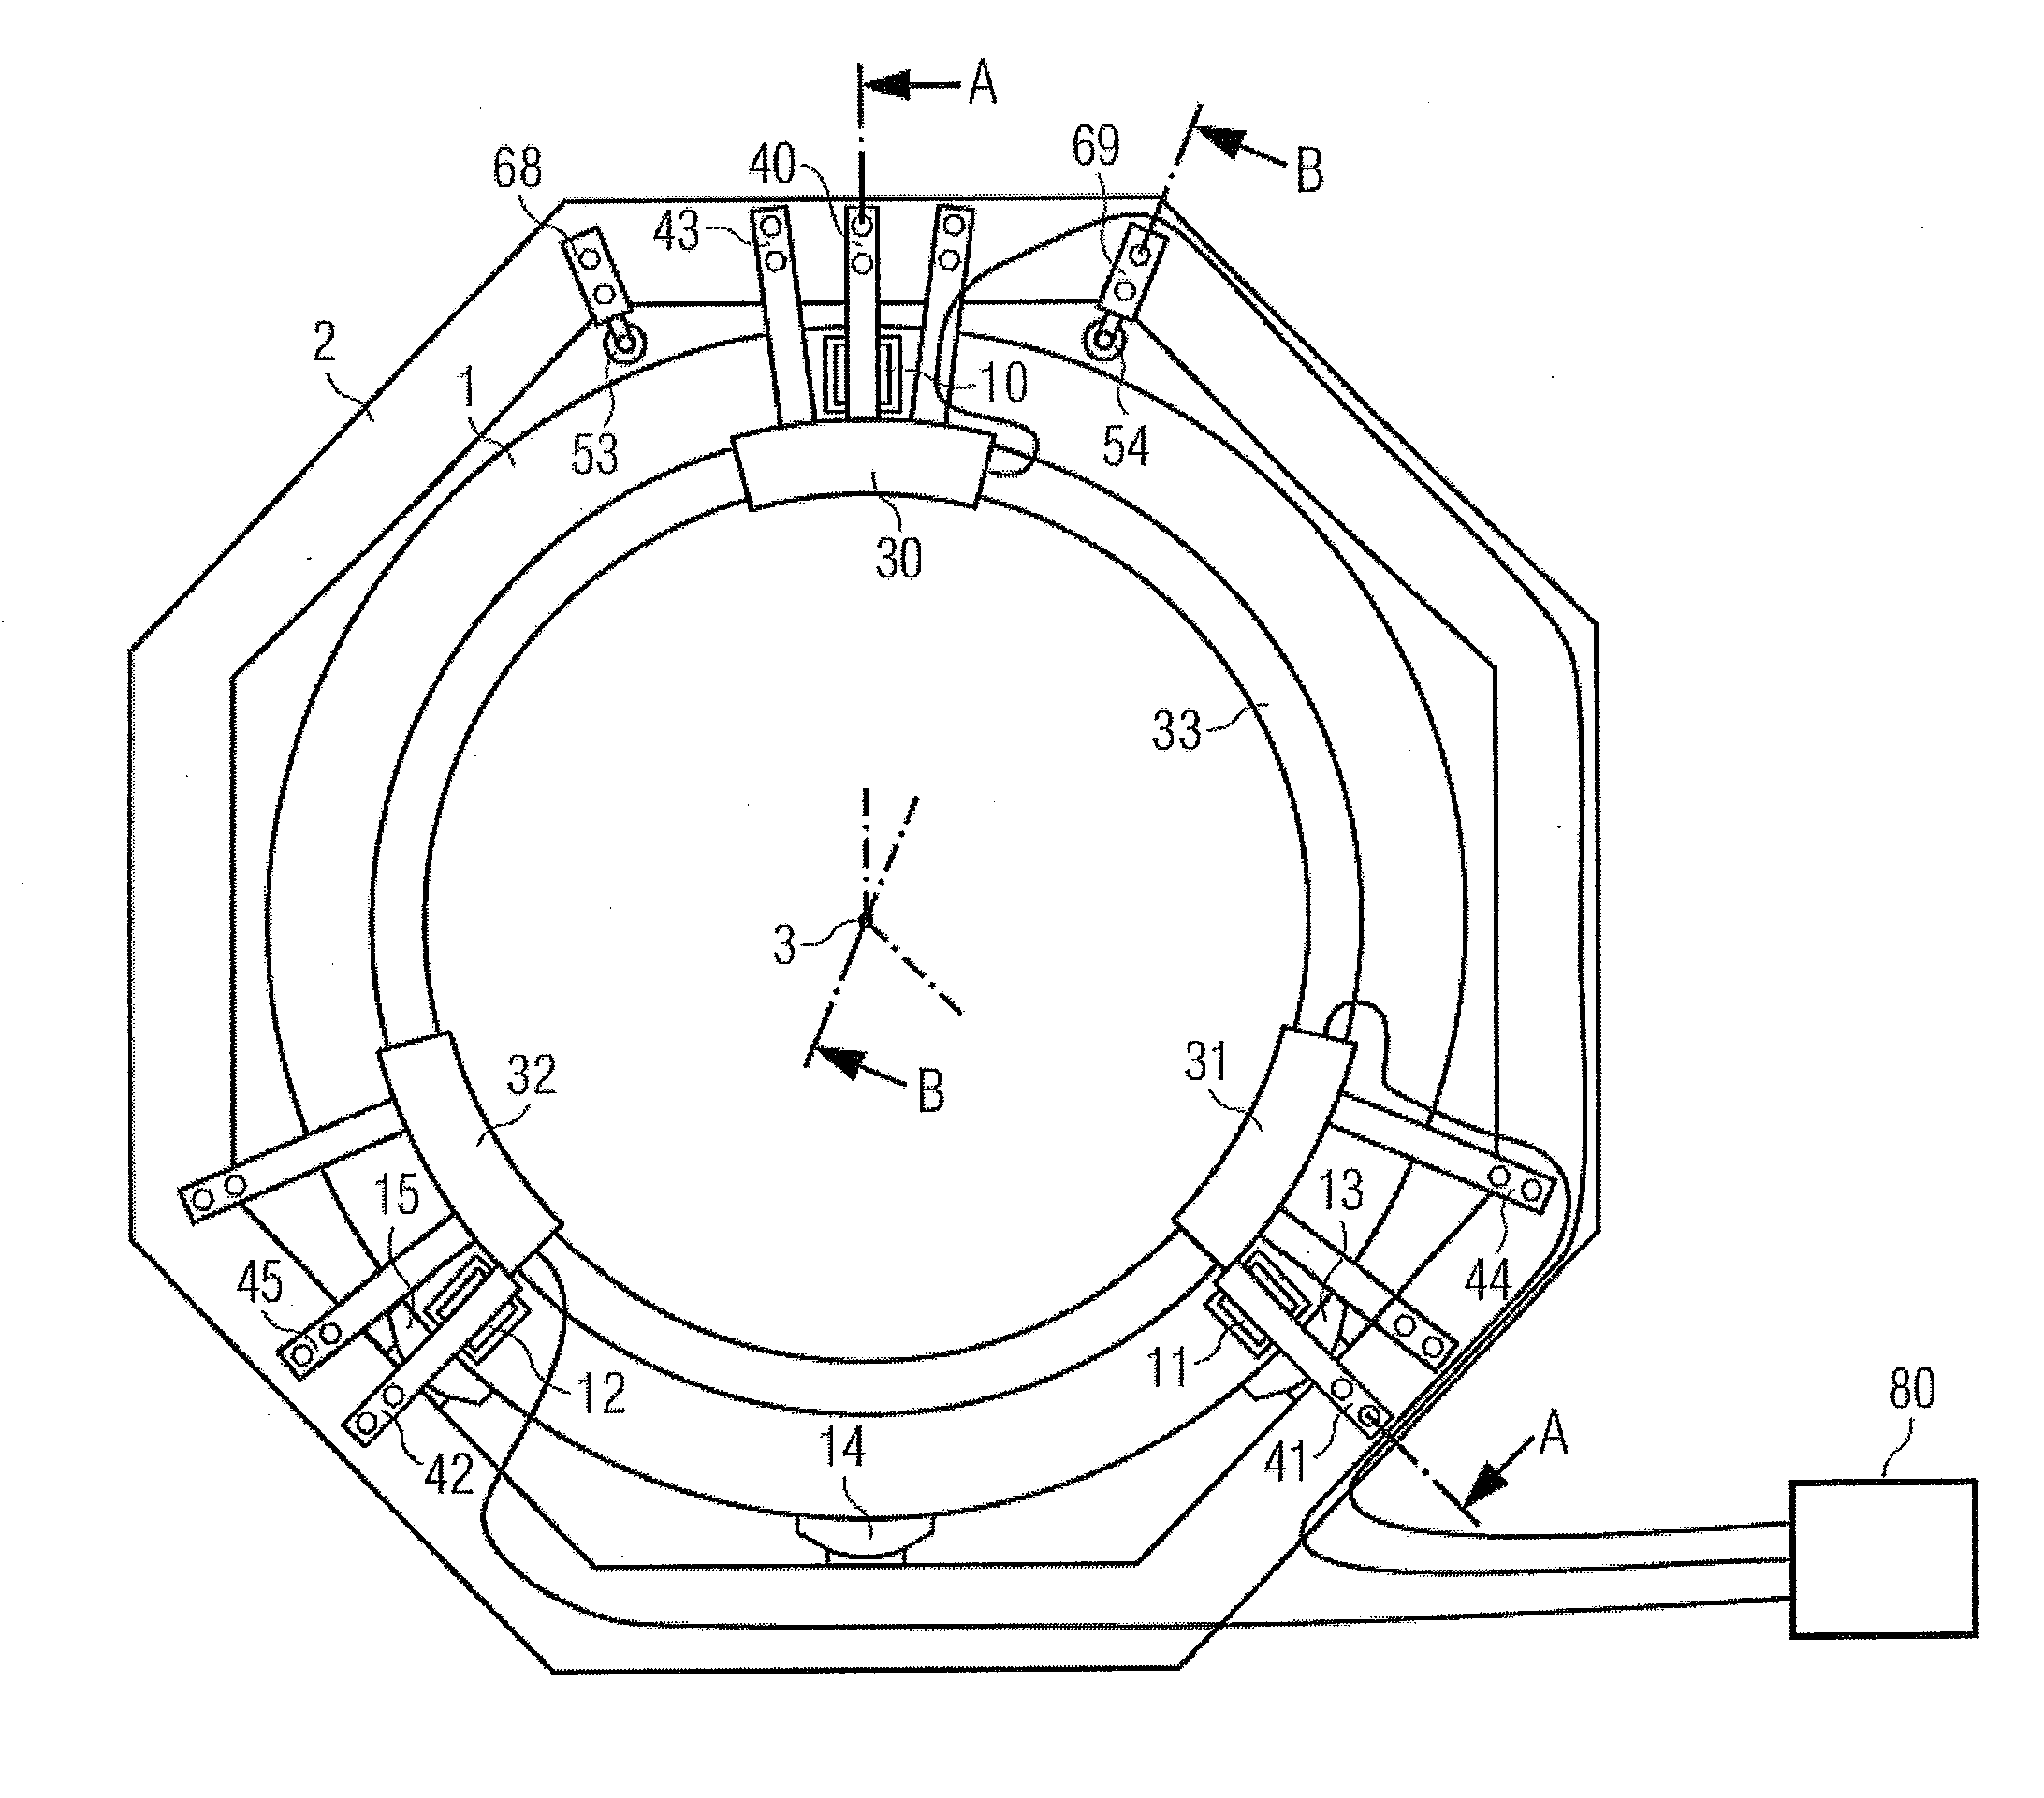 Ct scanner gantry with aerostatic bearing and segmented ring motor